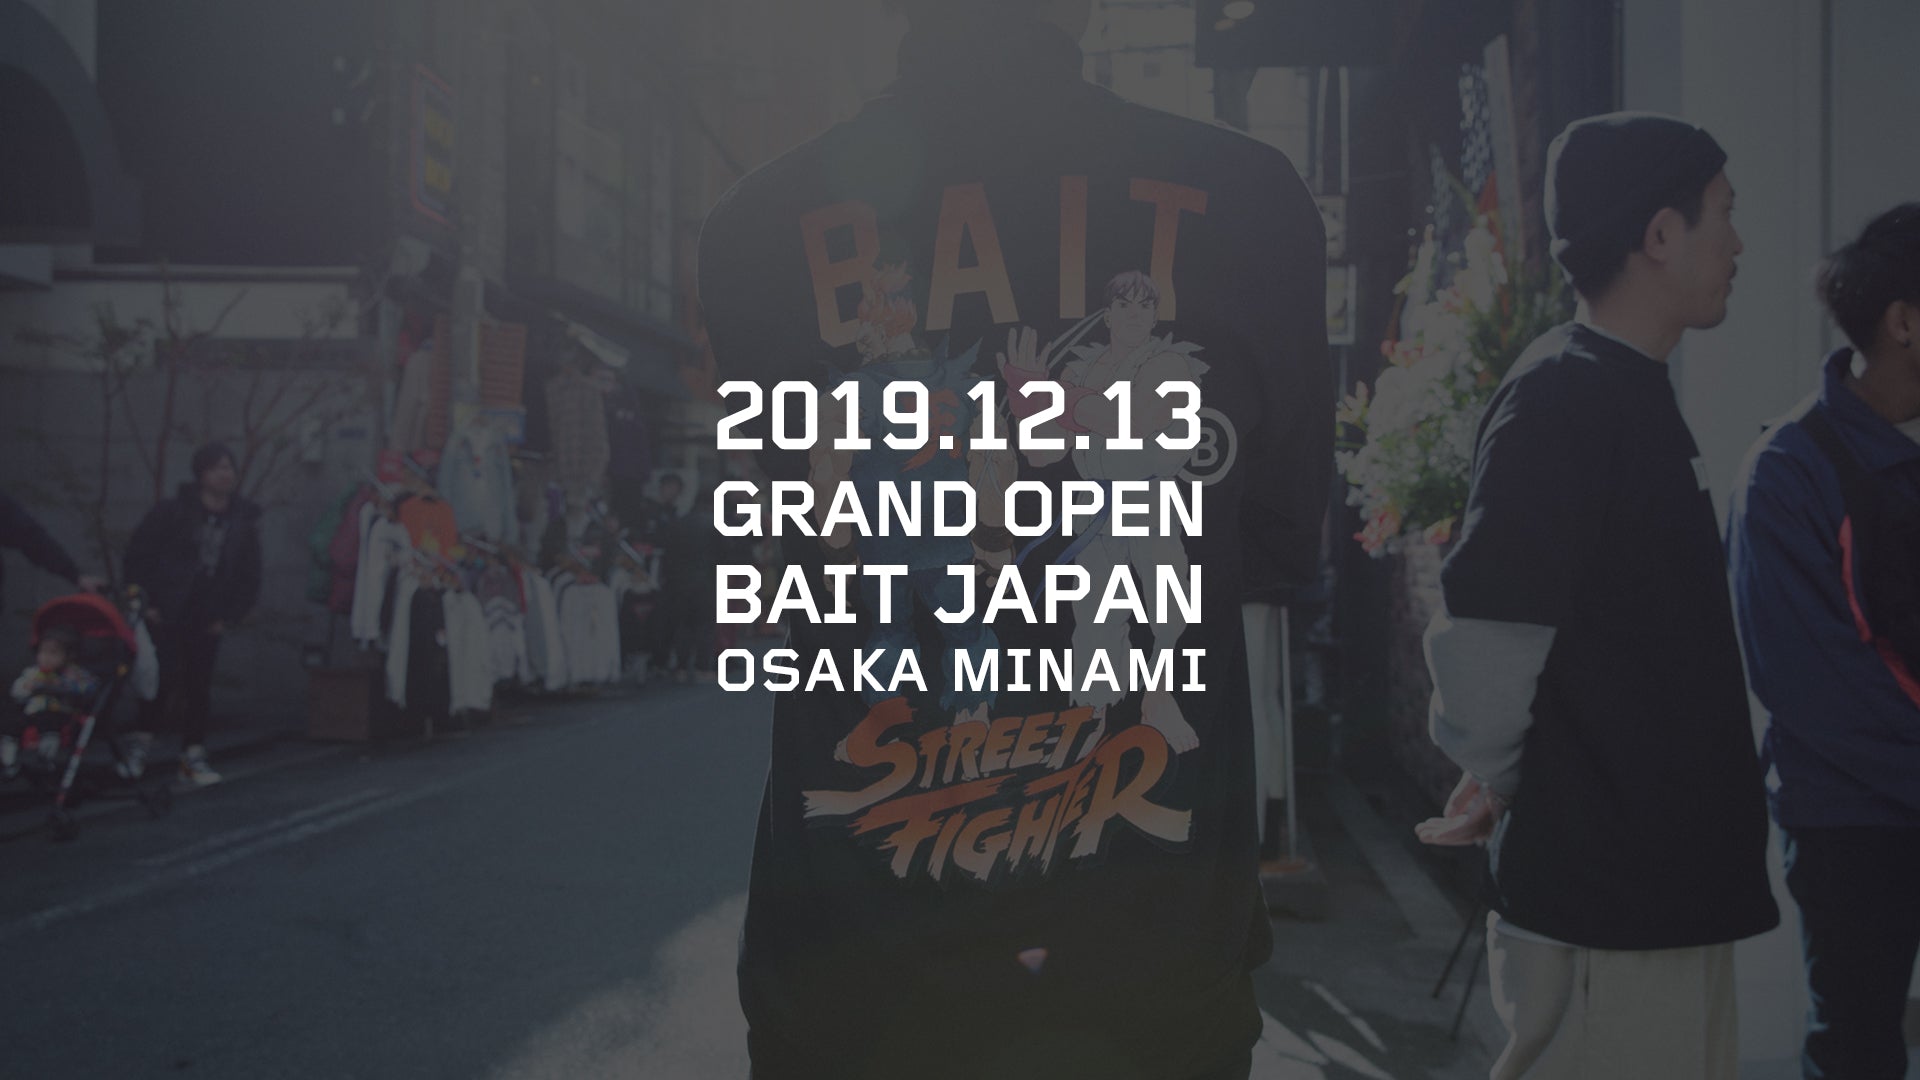 BAIT OSAKA MINAMI OPENING PARTY @2019.12.13